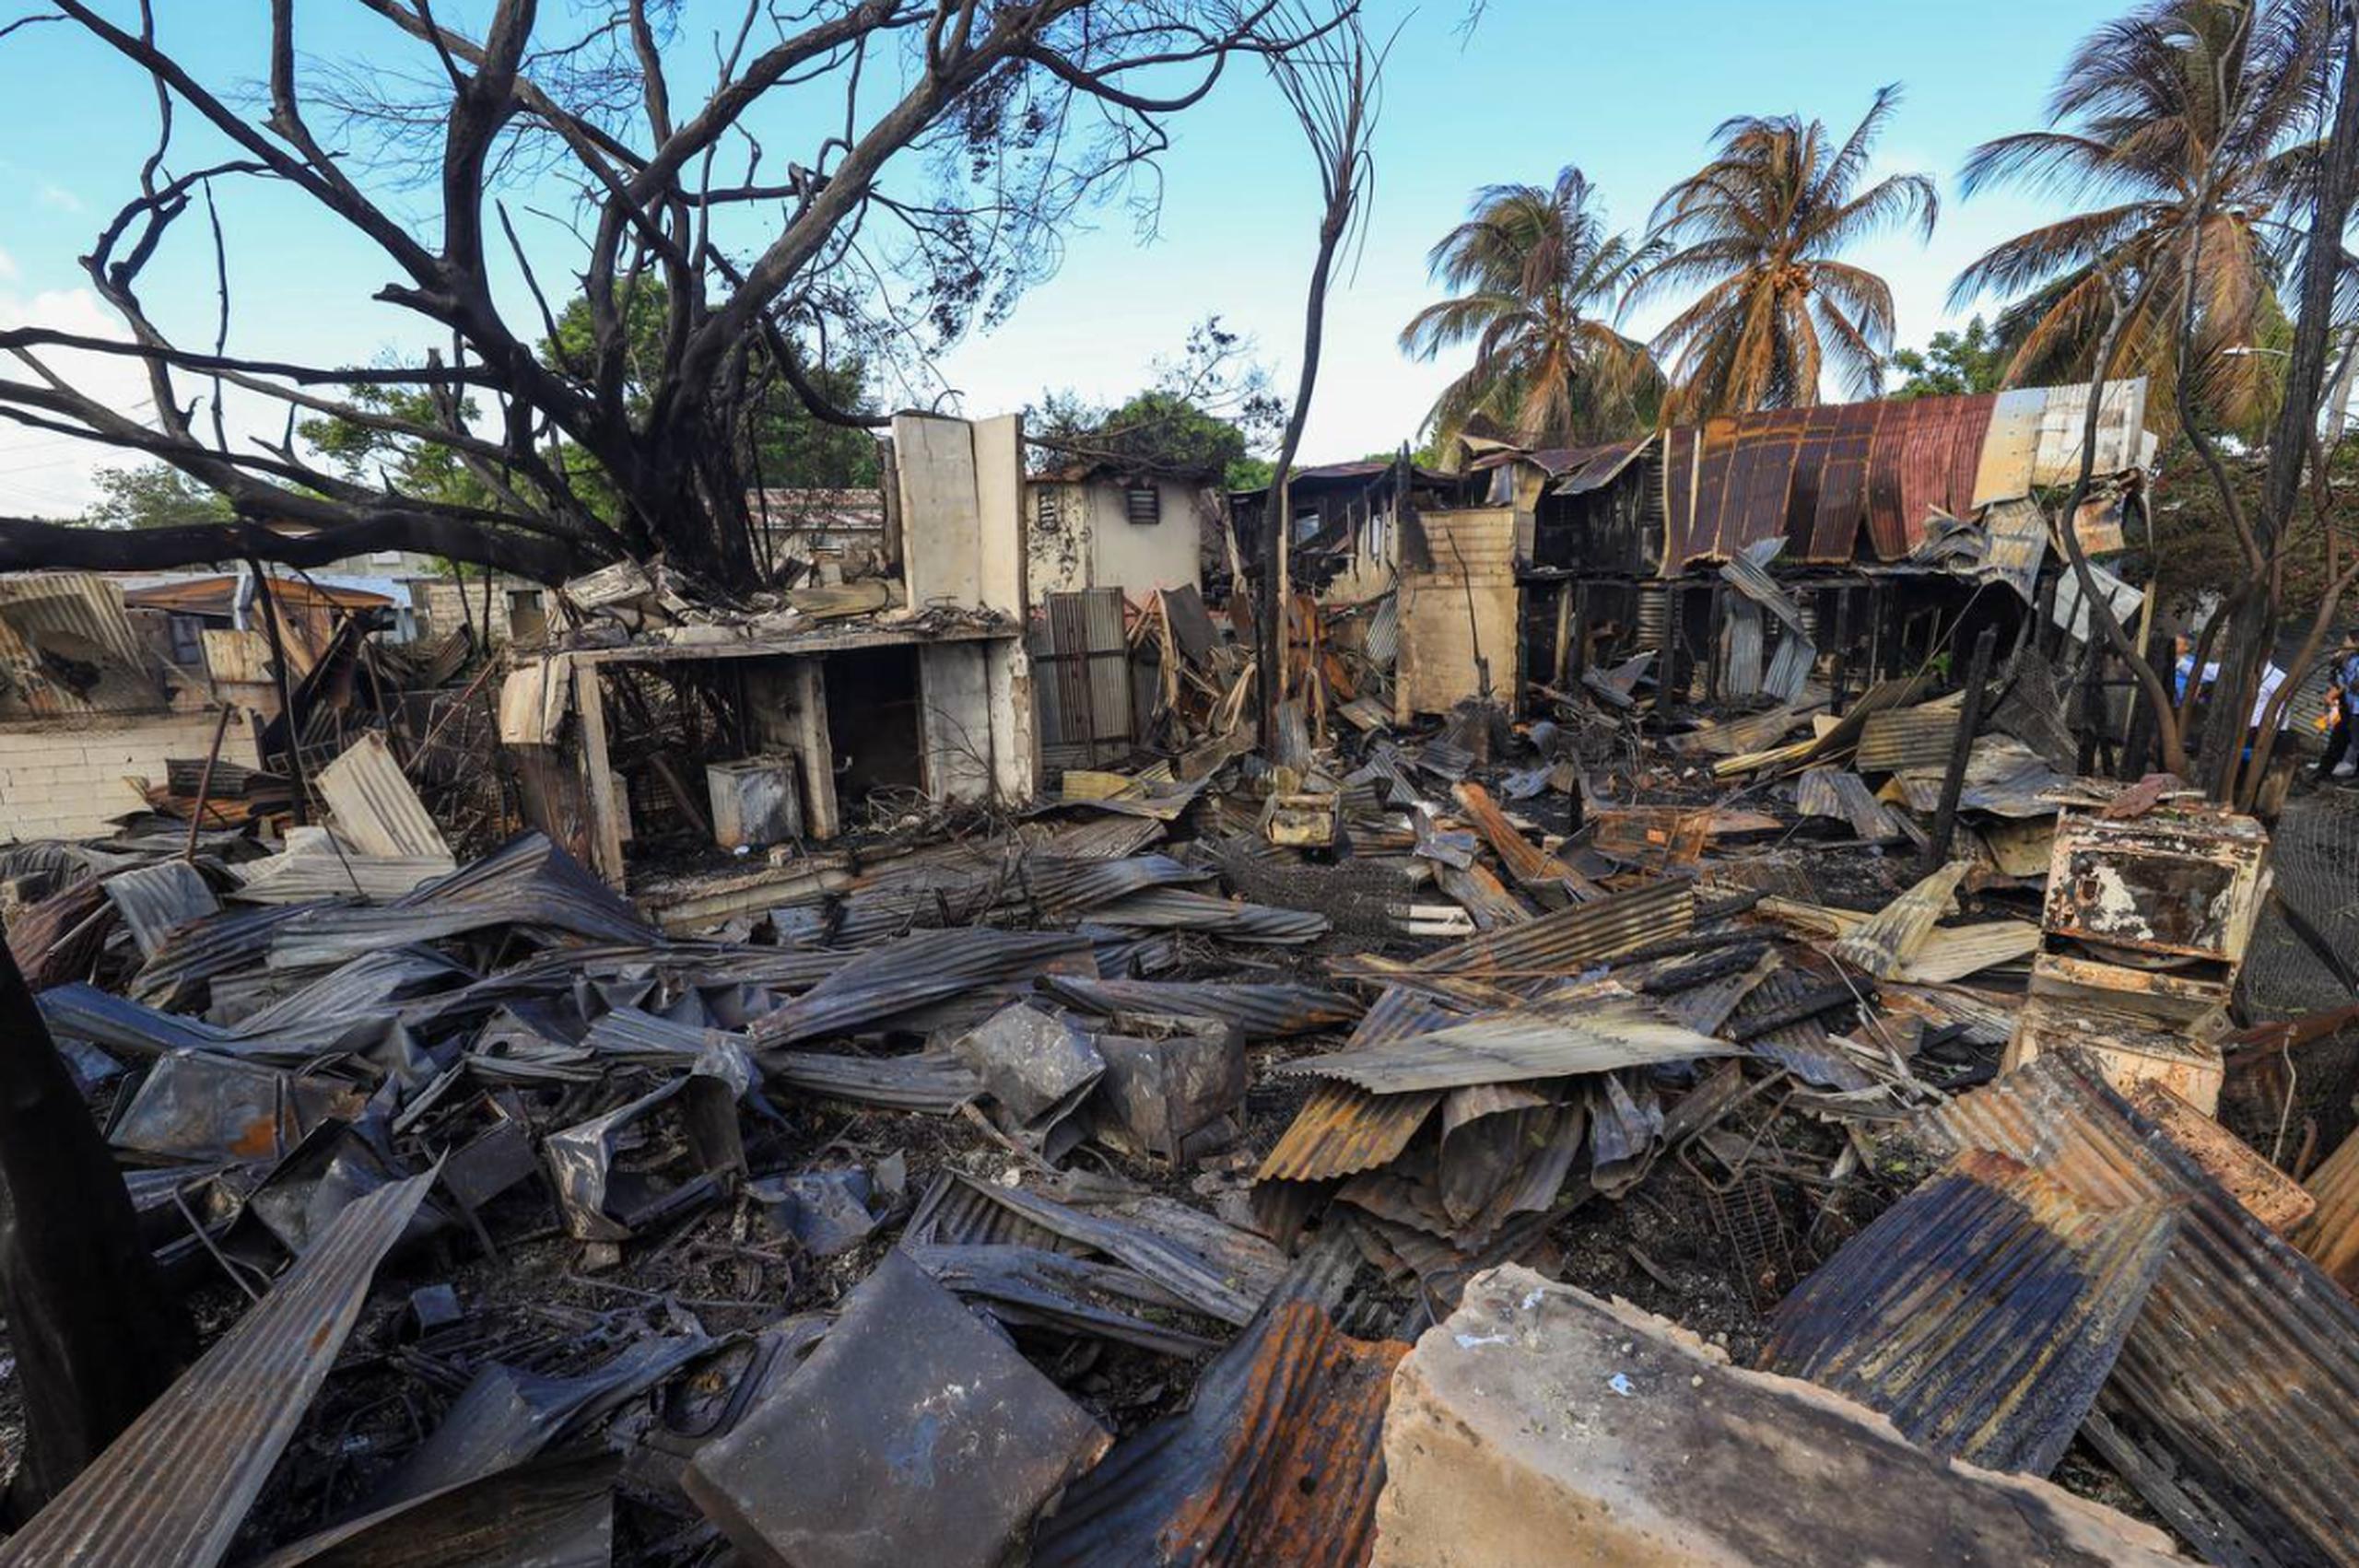 Afortunadamente, ninguno de los residentes resultó herido en el incendió que destruyó 15 residencias y estructuras.